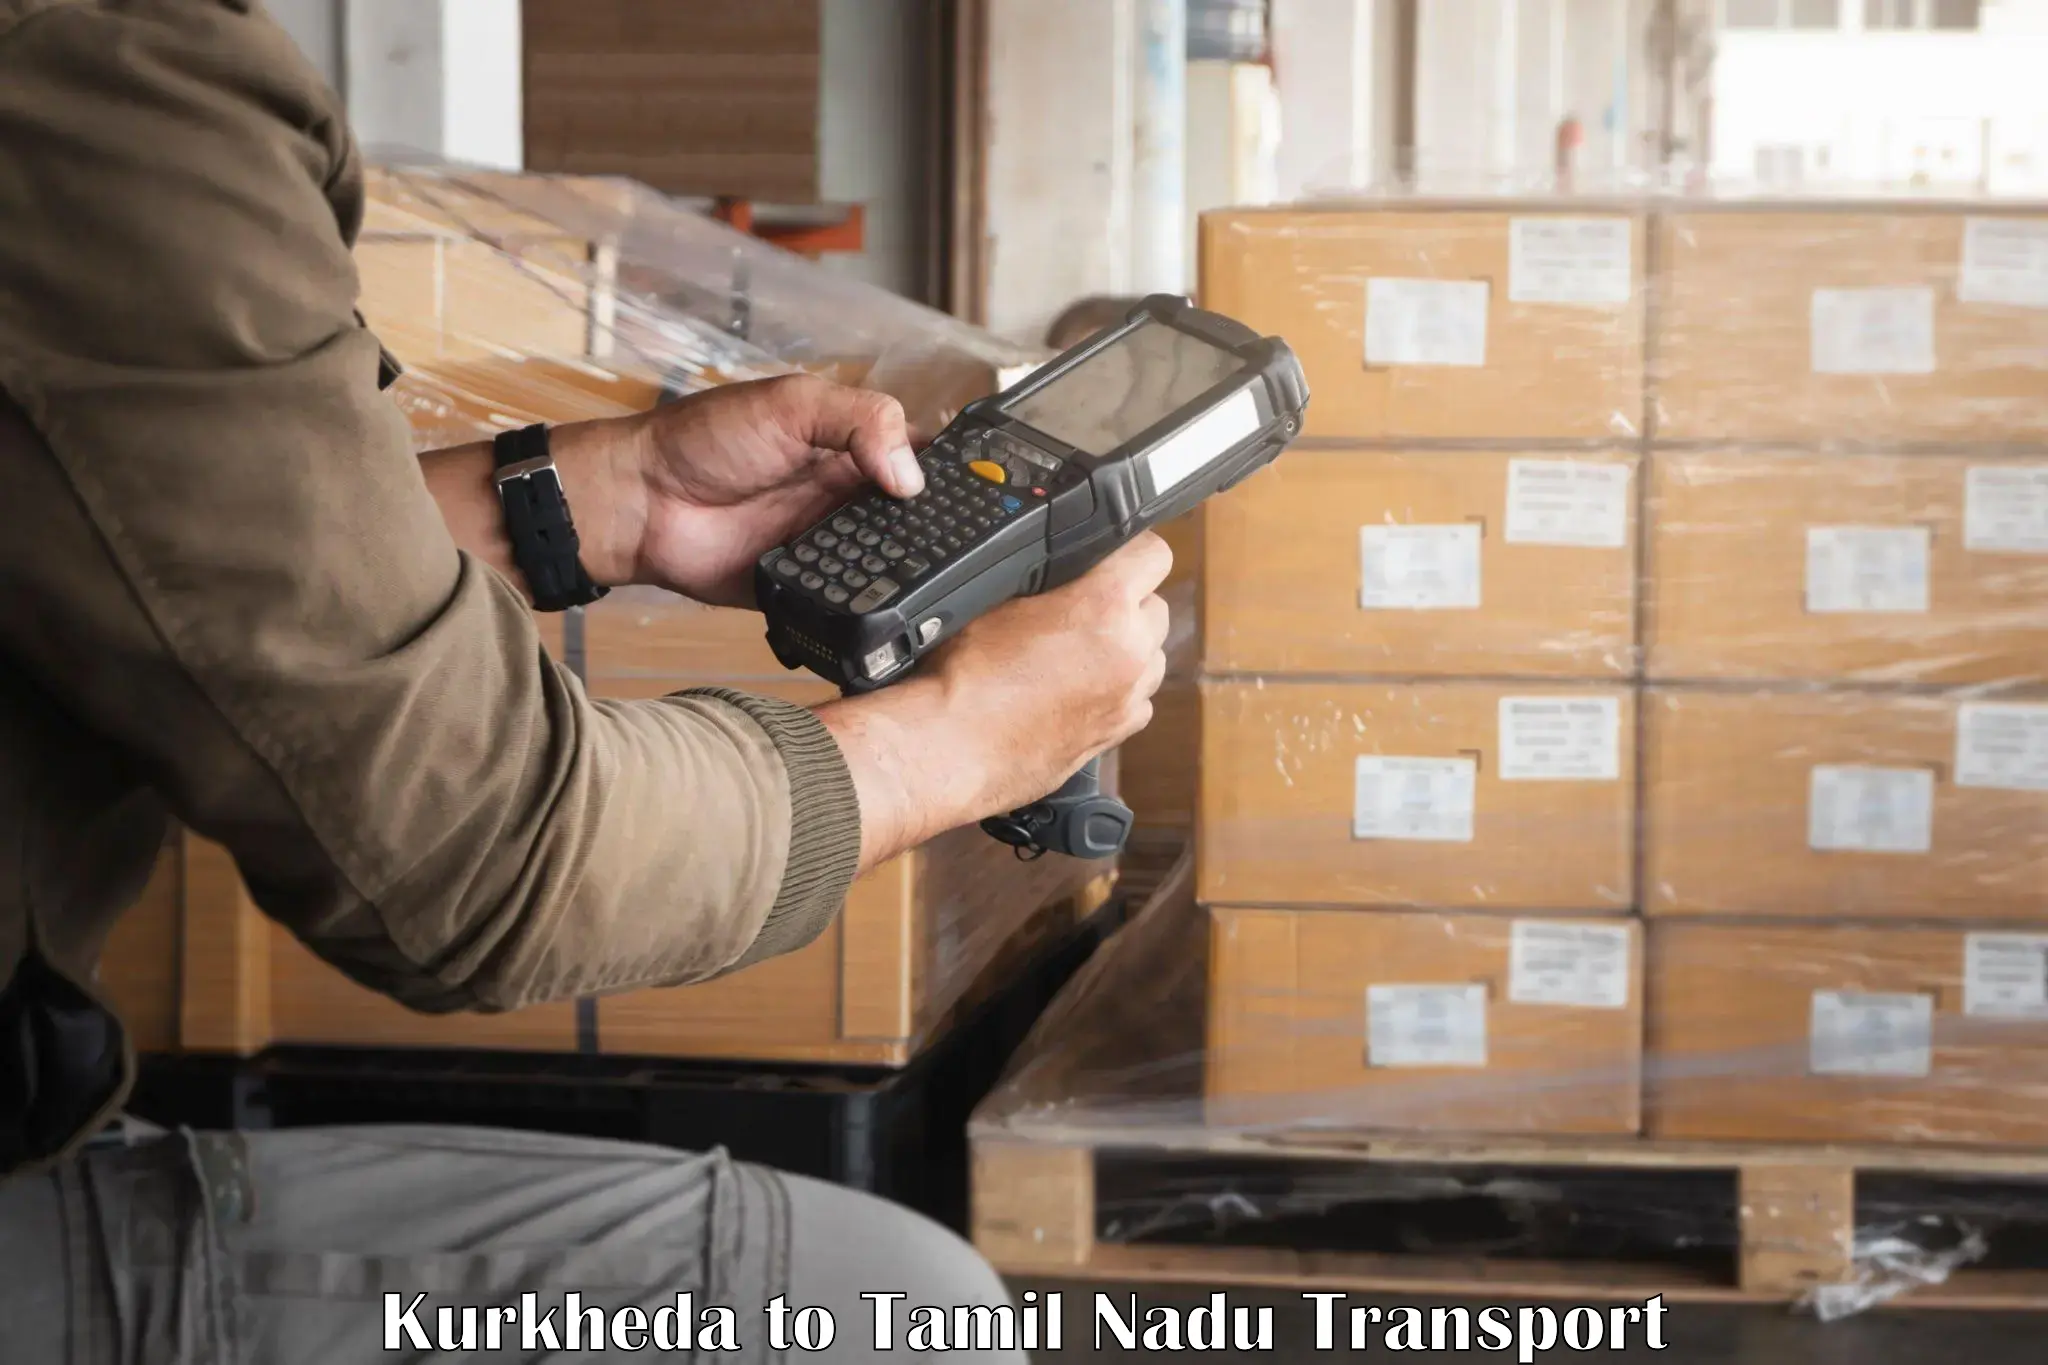 Daily transport service Kurkheda to Nilgiris